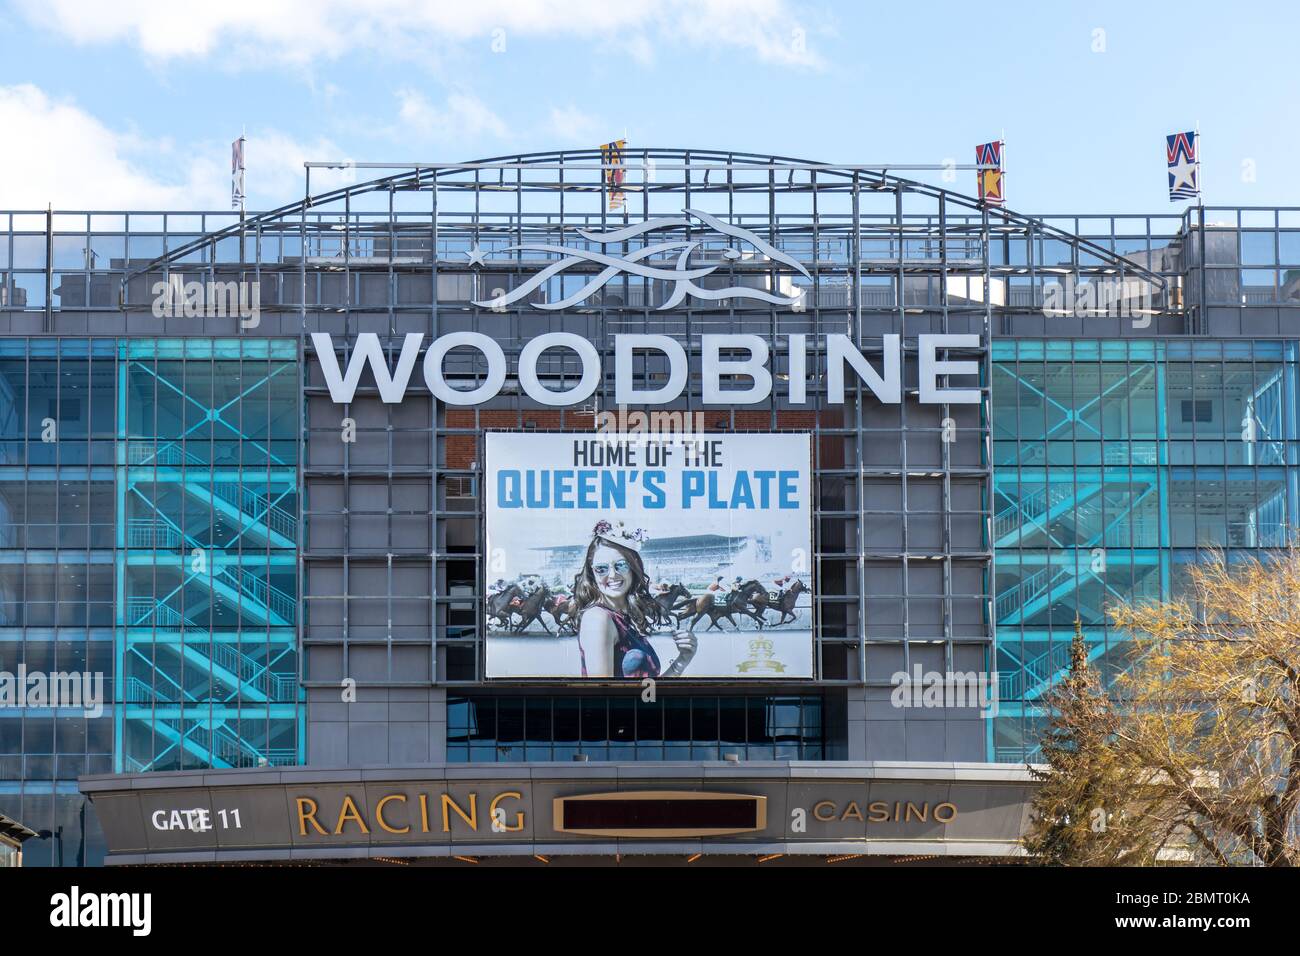 Woodbine Casino and Racetrack panneau à l'avant de la destination populaire. Le site abrite la Queen's plate, une course à pied de longue date célèbre. Banque D'Images